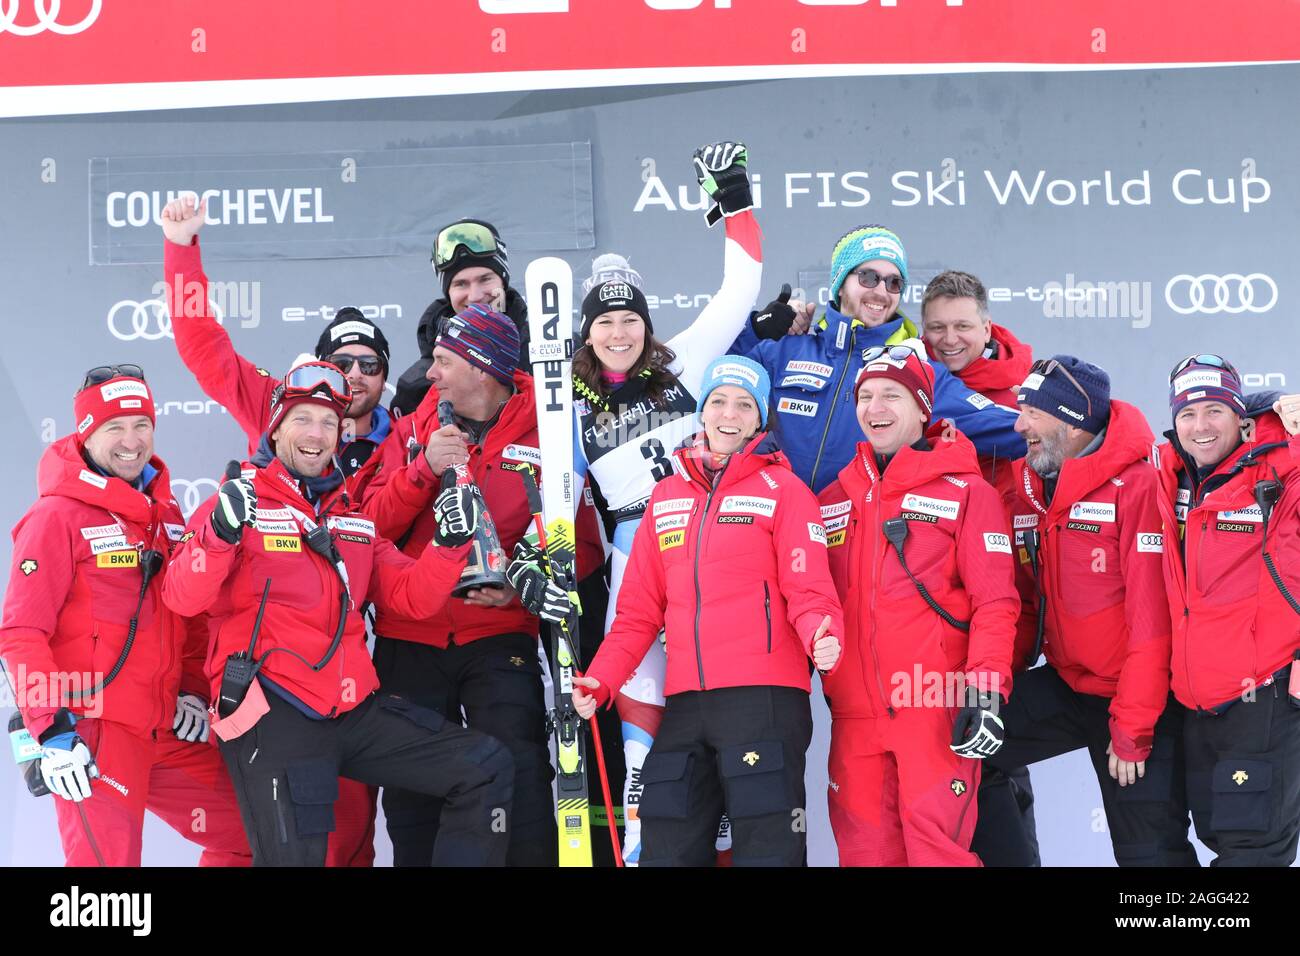 Courchevel Frankreich, Wendy Holdener der Schweiz 3 iwomen Riesenslalom  gültig für den Audi FIS Alpine Ski World Cup 2019/20 wintertersports  Skifahren Stockfotografie - Alamy